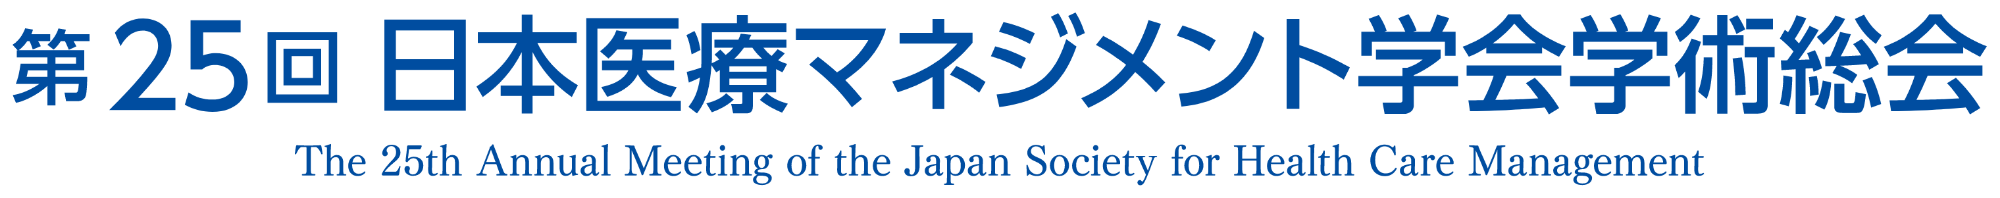 第25回日本医療マネジメント学会学術総会 The 25th Annual Meeting of the Japan Society for Health Care Management